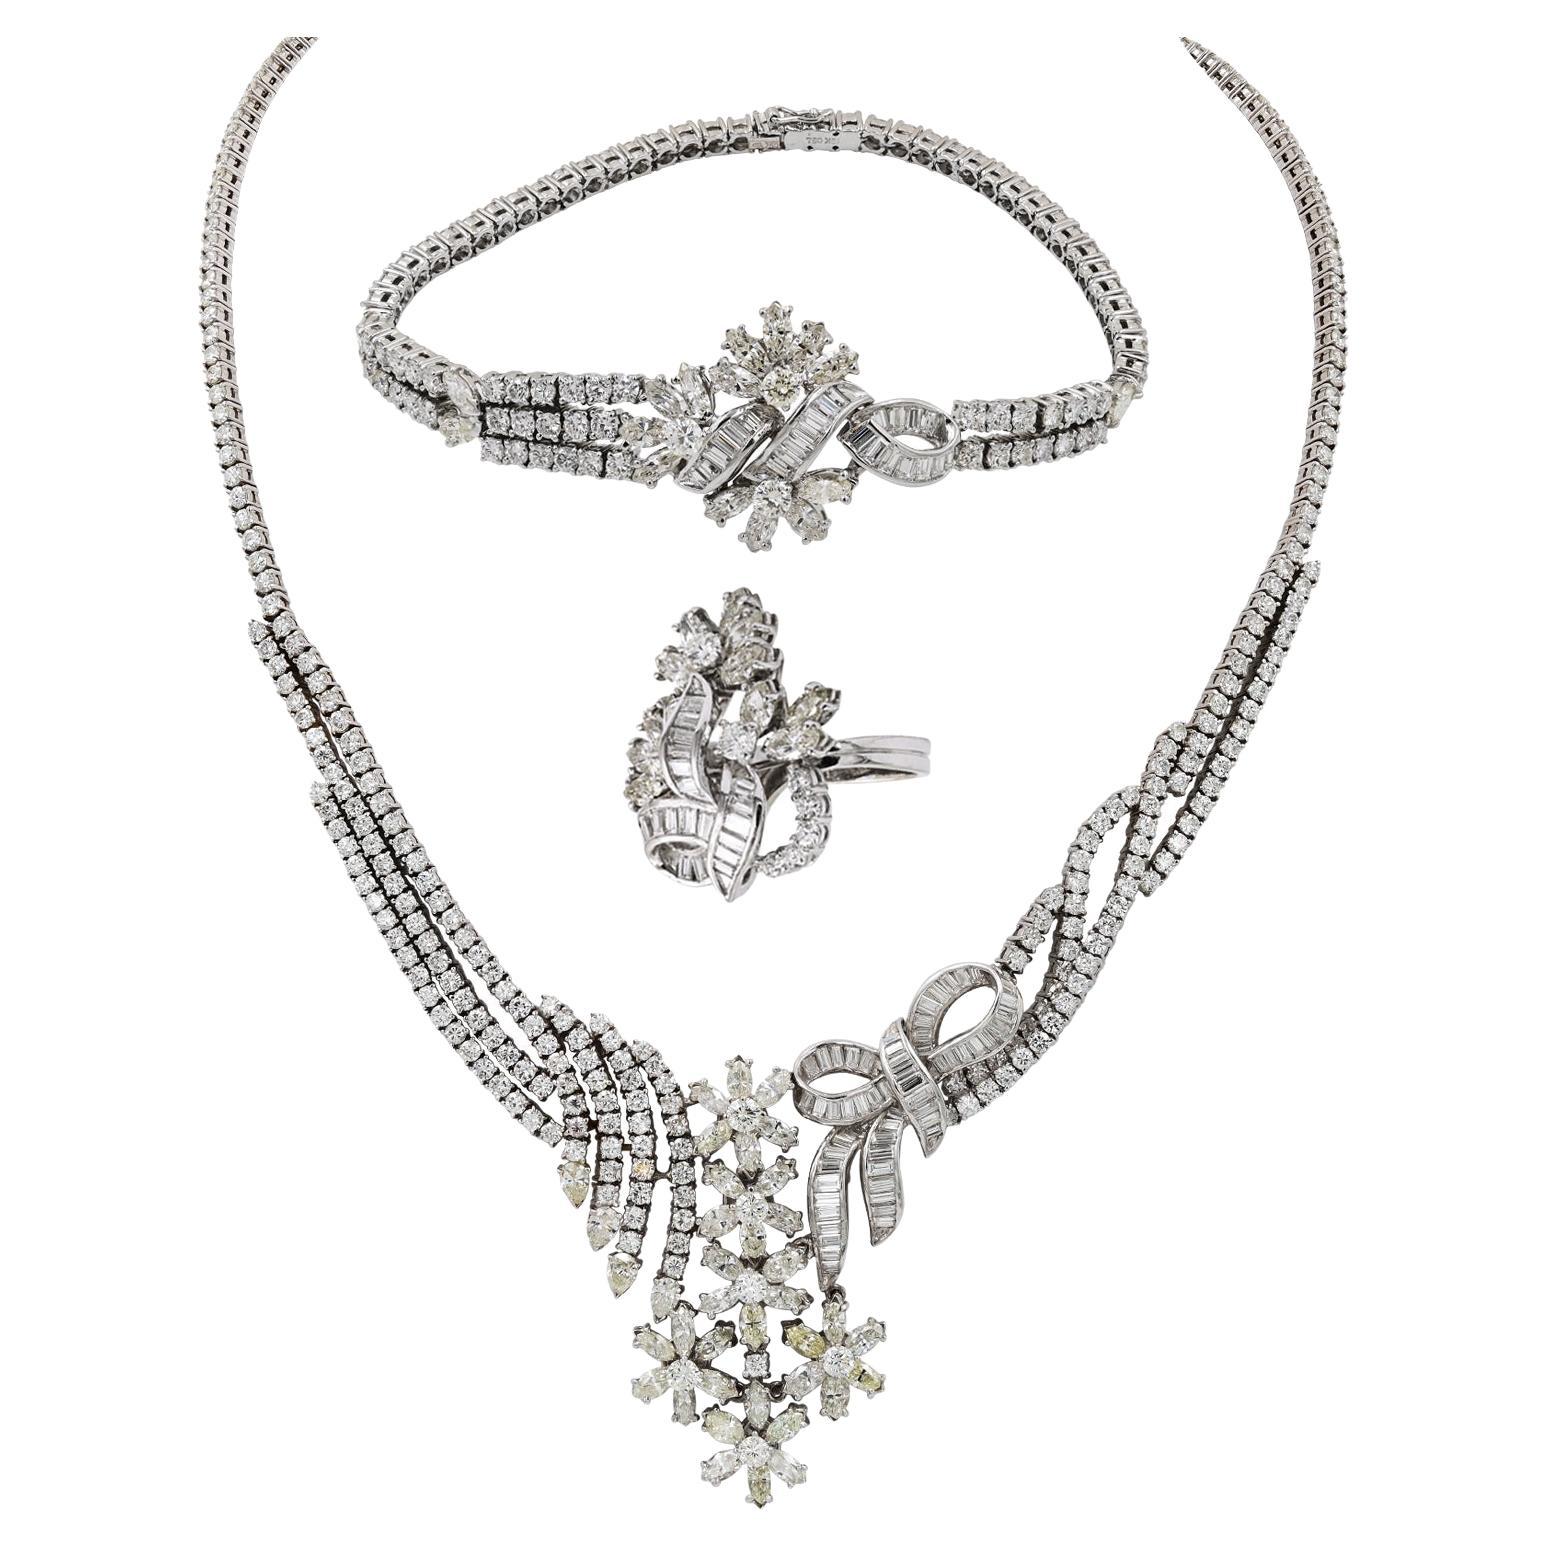 Suite de bijoux en or blanc 18 carats avec collier et bague en diamants